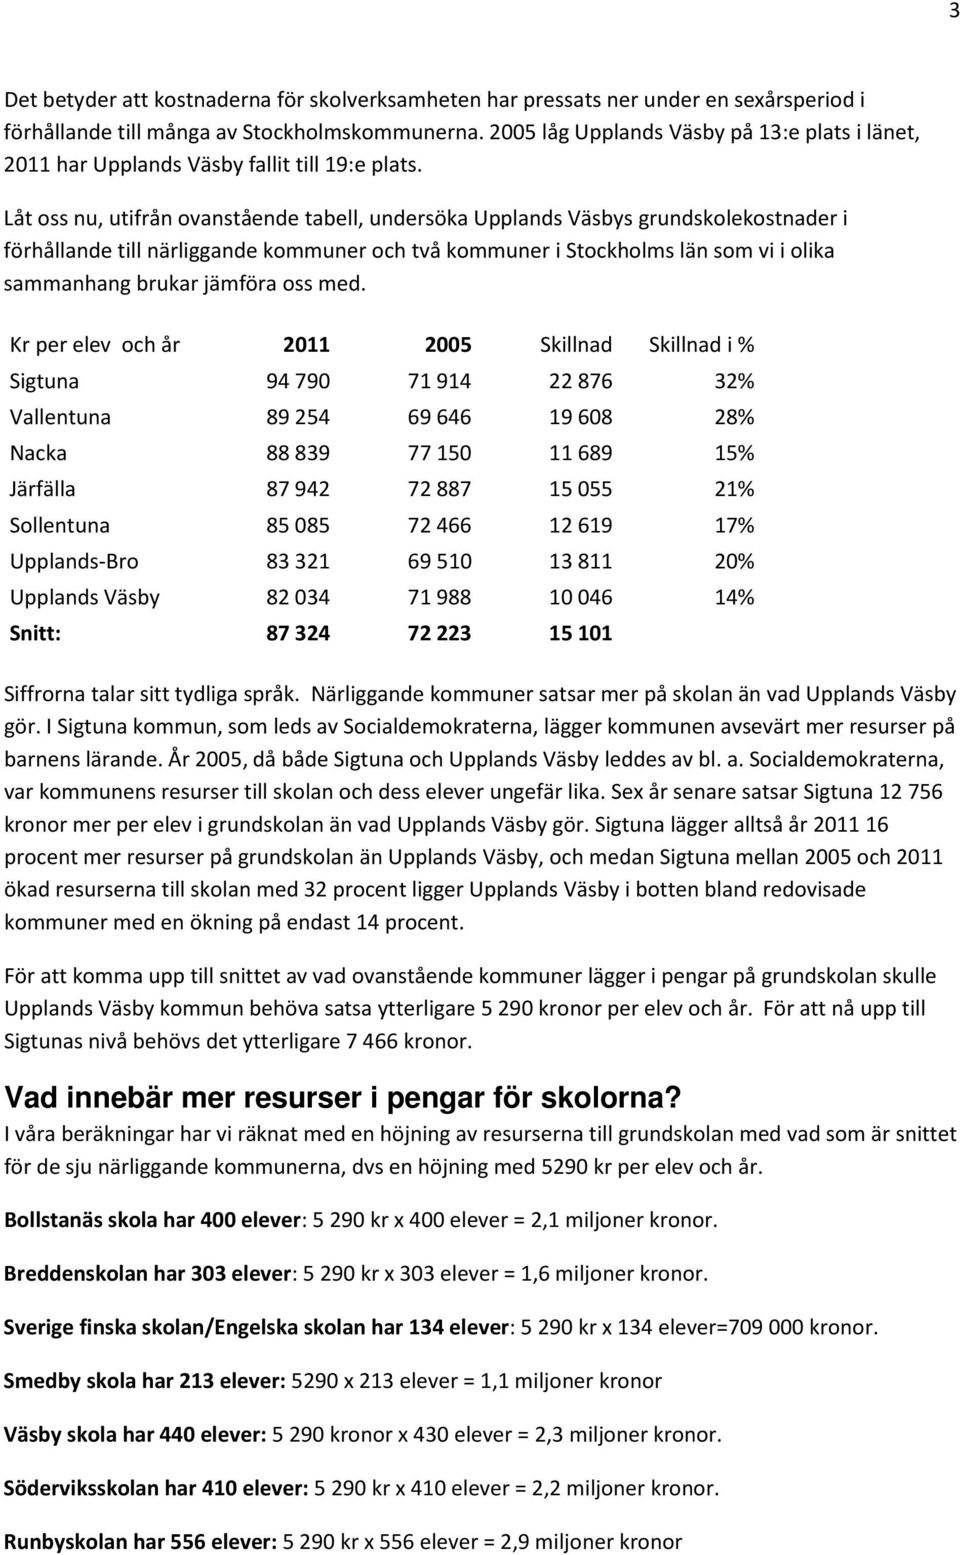 Låt oss nu, utifrån ovanstående tabell, undersöka Upplands Väsbys grundskolekostnader i förhållande till närliggande kommuner och två kommuner i Stockholms län som vi i olika sammanhang brukar